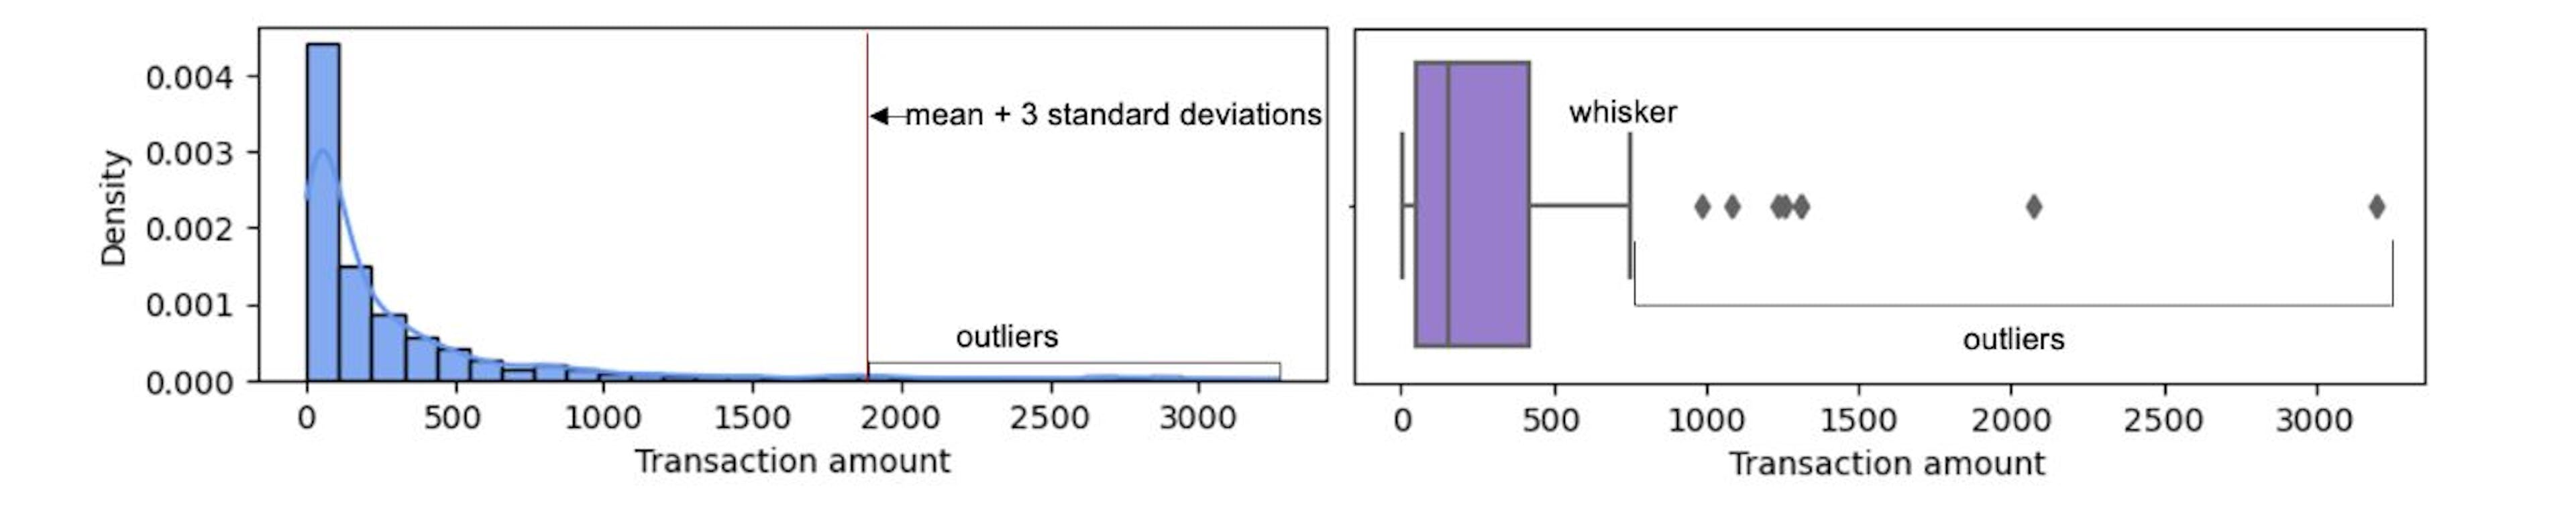 Yukarıdaki resim, tek değişkenli aykırı değerleri tespit etmek için yaygın olarak kullanılan iki tekniği göstermektedir. İki tekniğin farklı aykırı değerler üretebildiğini görebiliriz. Veriler normal bir dağılım izliyorsa ortalama+3 SD tekniği kullanılmalıdır. Kutu grafiği bıyık tabanlı teknik daha geneldir ve herhangi bir dağılıma sahip verilere uygulanabilir.